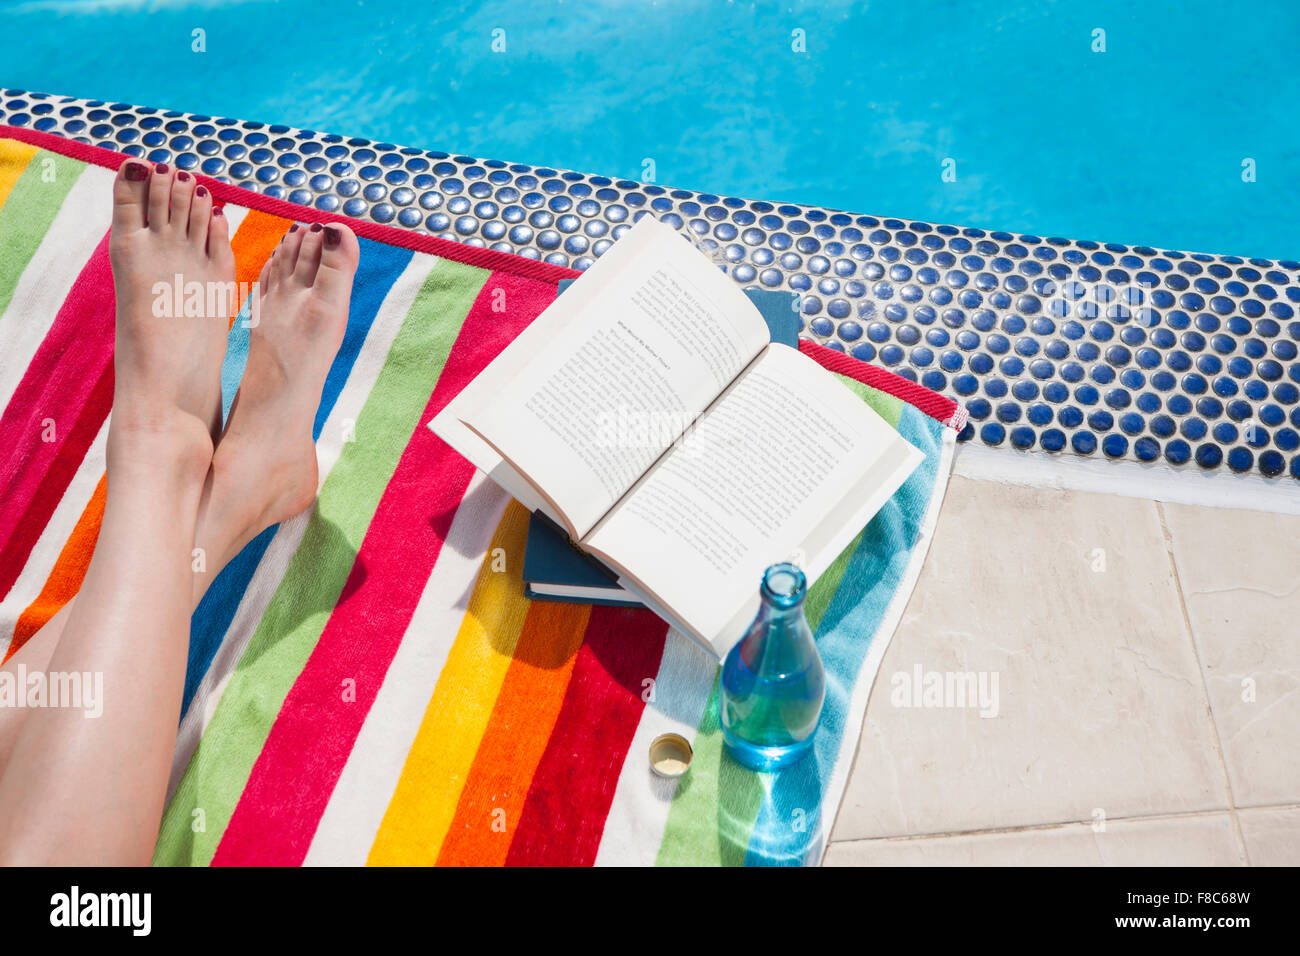 Elevato angolo di gambe incrociate di una persona su un asciugamano colorato con libri e bevanda al bordo della piscina Foto Stock